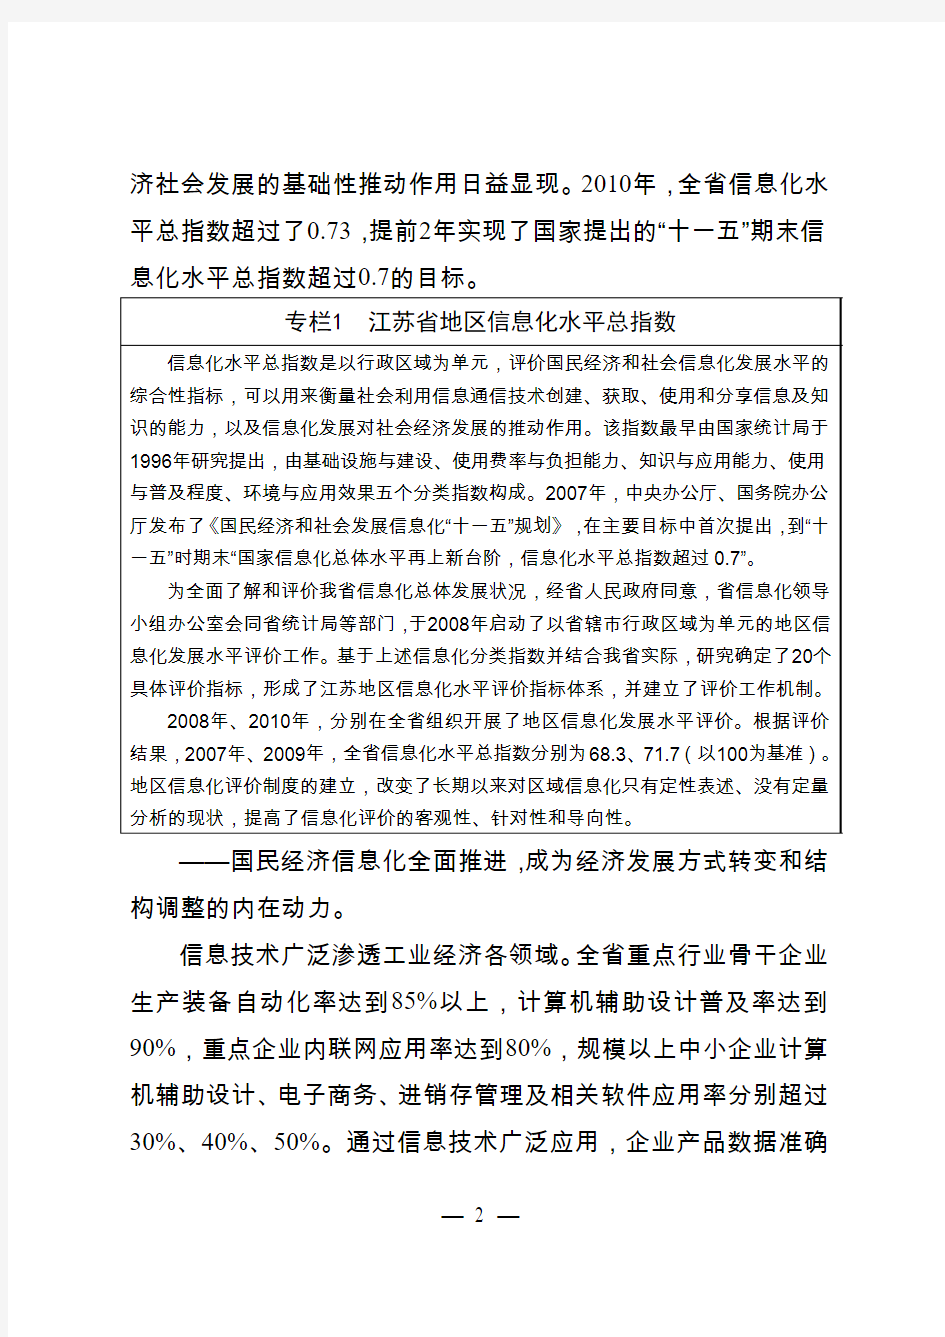 江苏省“十二五”国民经济和社会发展信息化规划